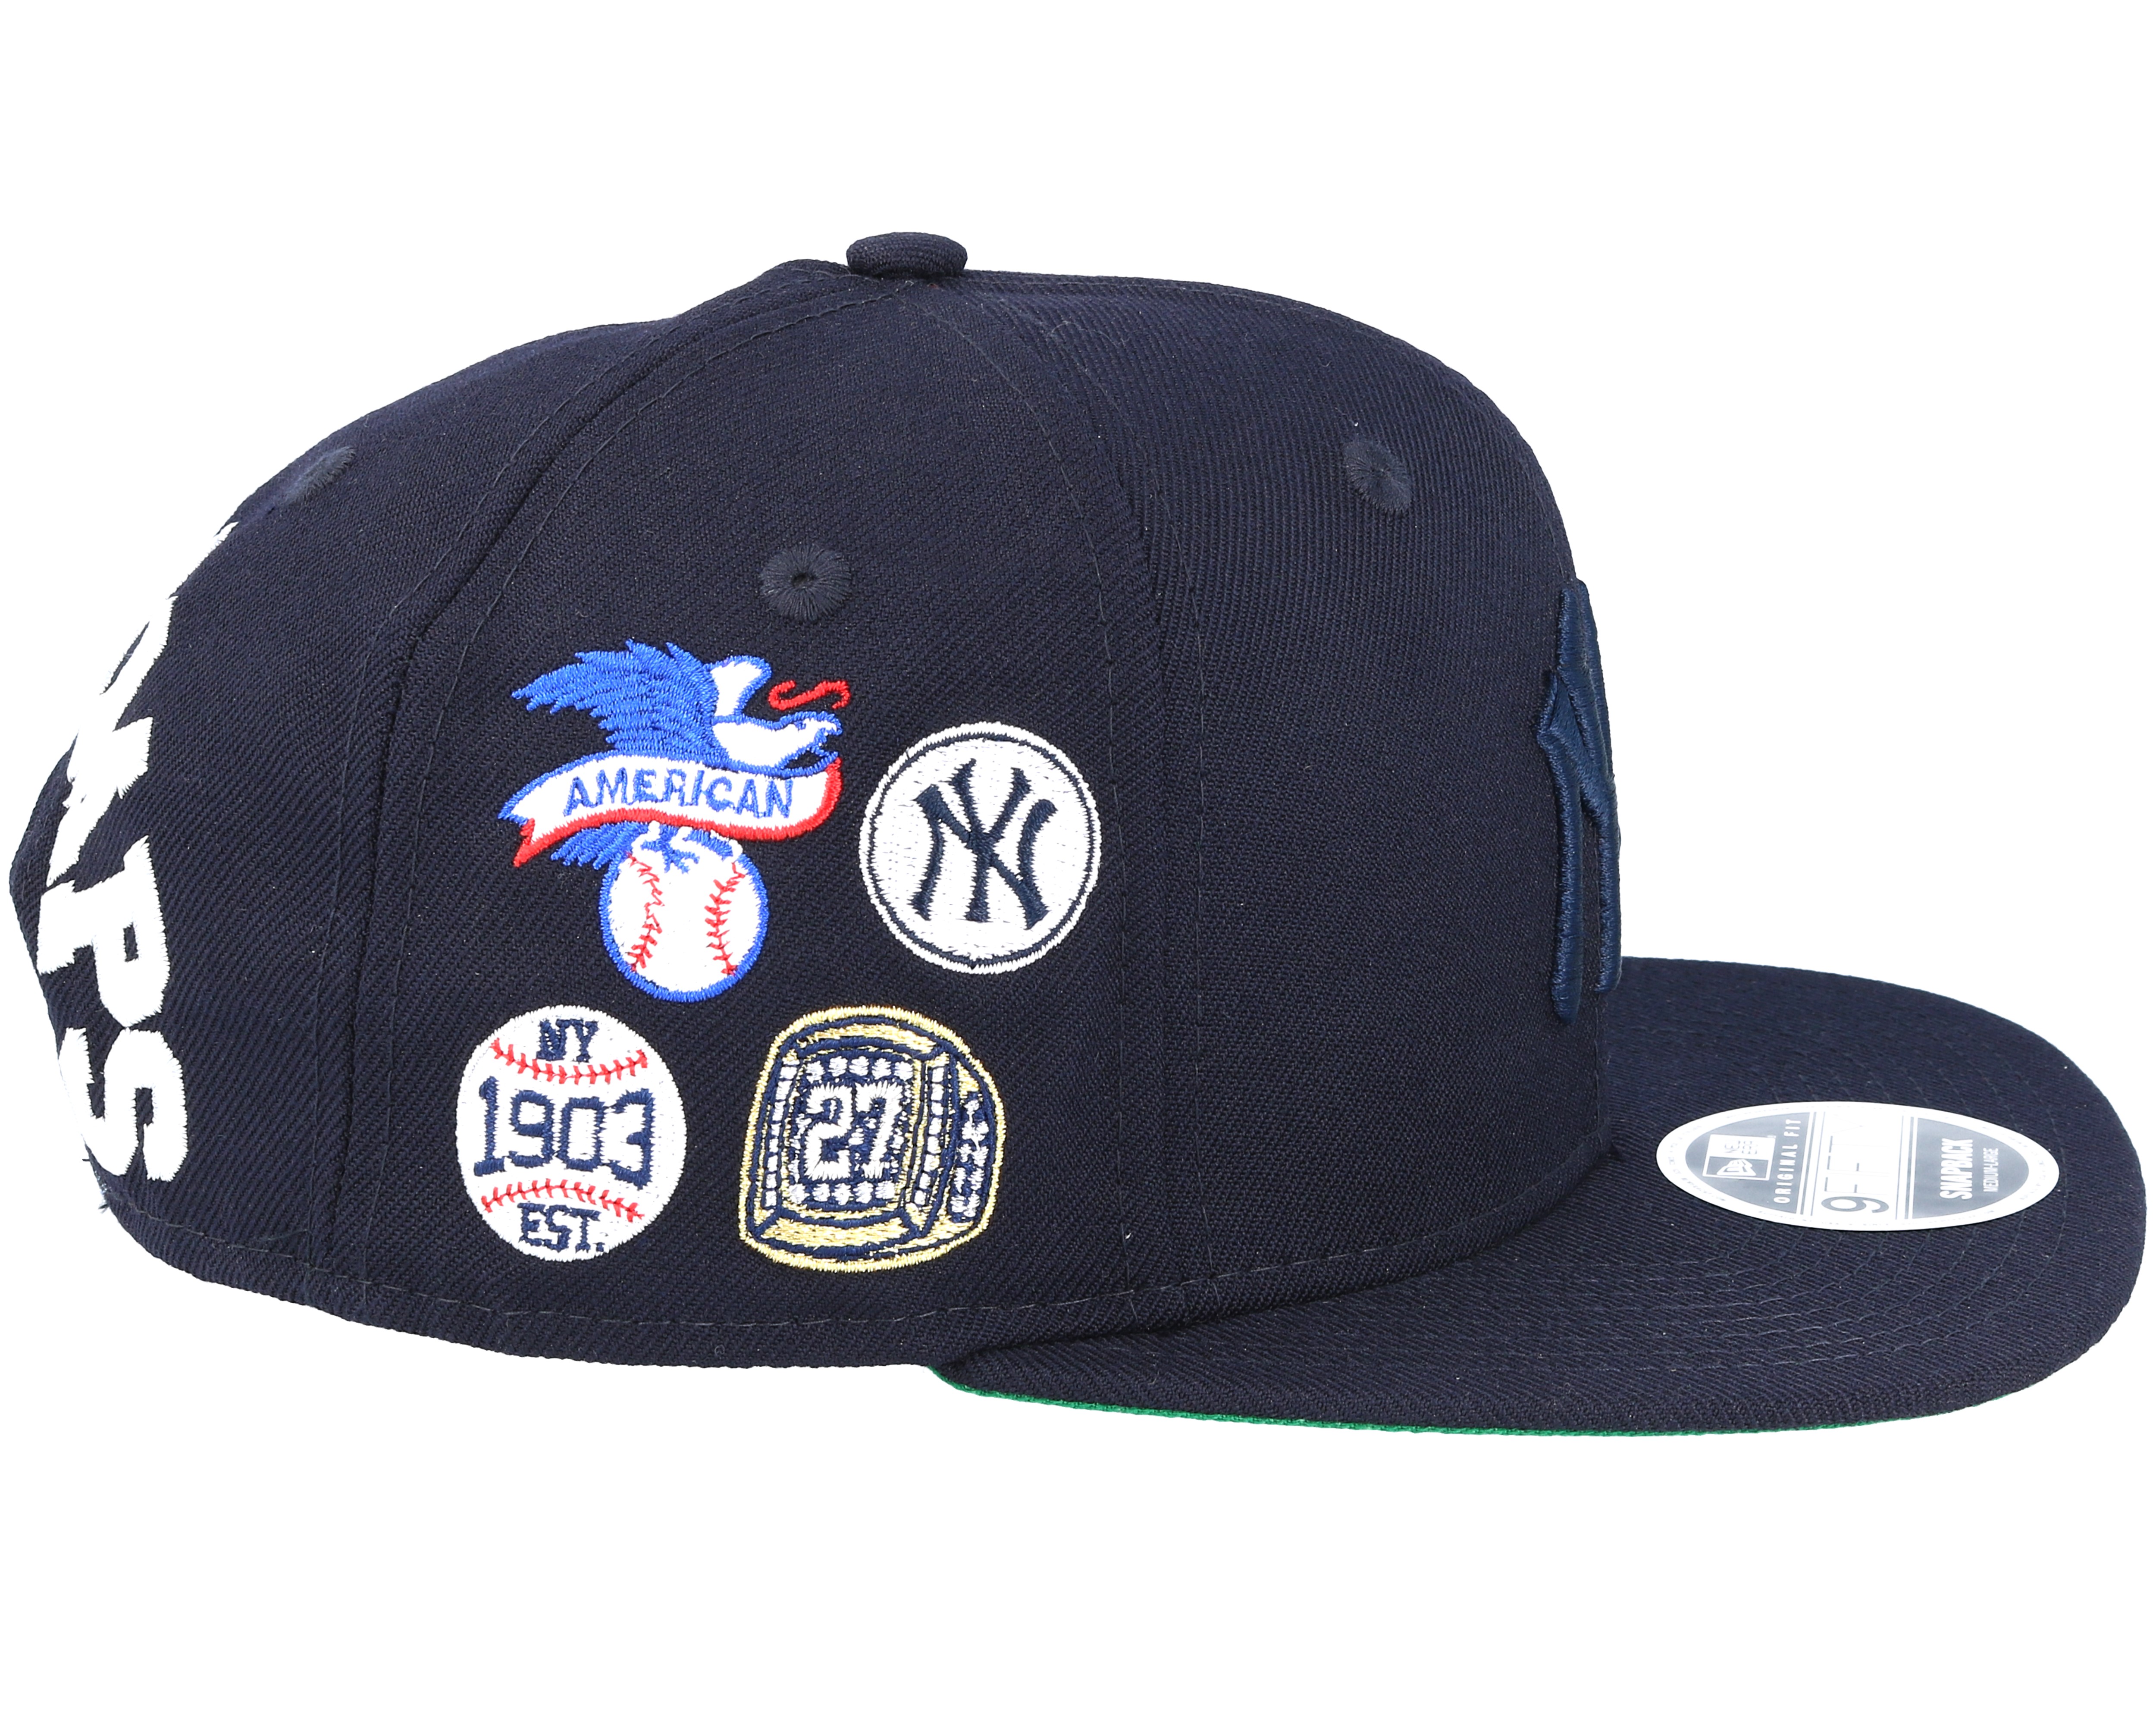 New York Yankees Winners Patch Navy Snapback - New Era caps | Hatstore ...